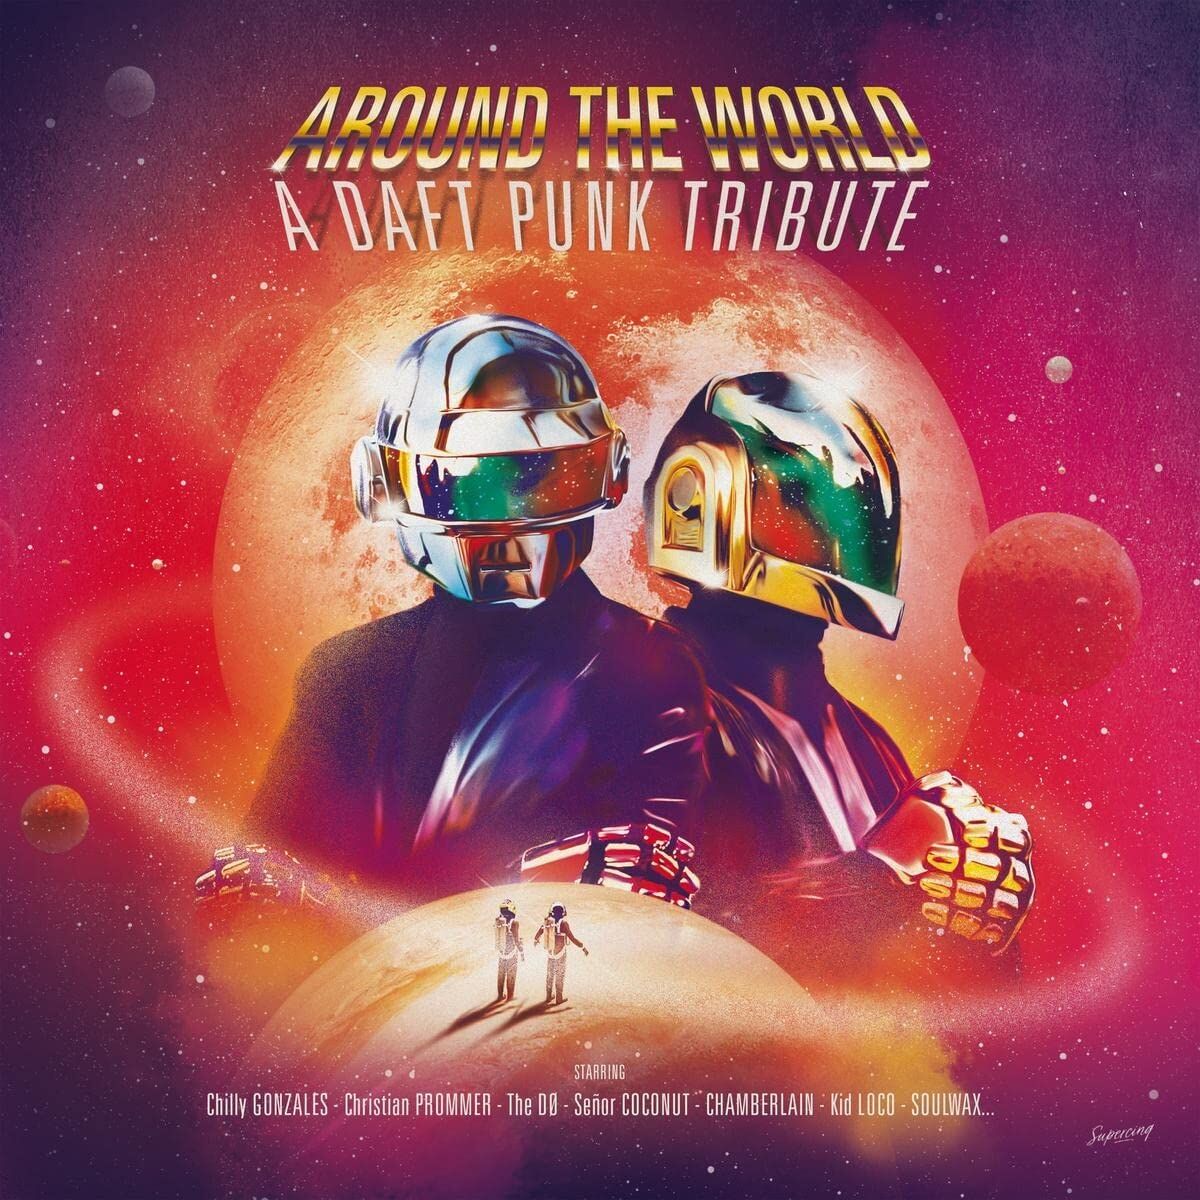 Daft Punk Tribute / Around The World LP レコード